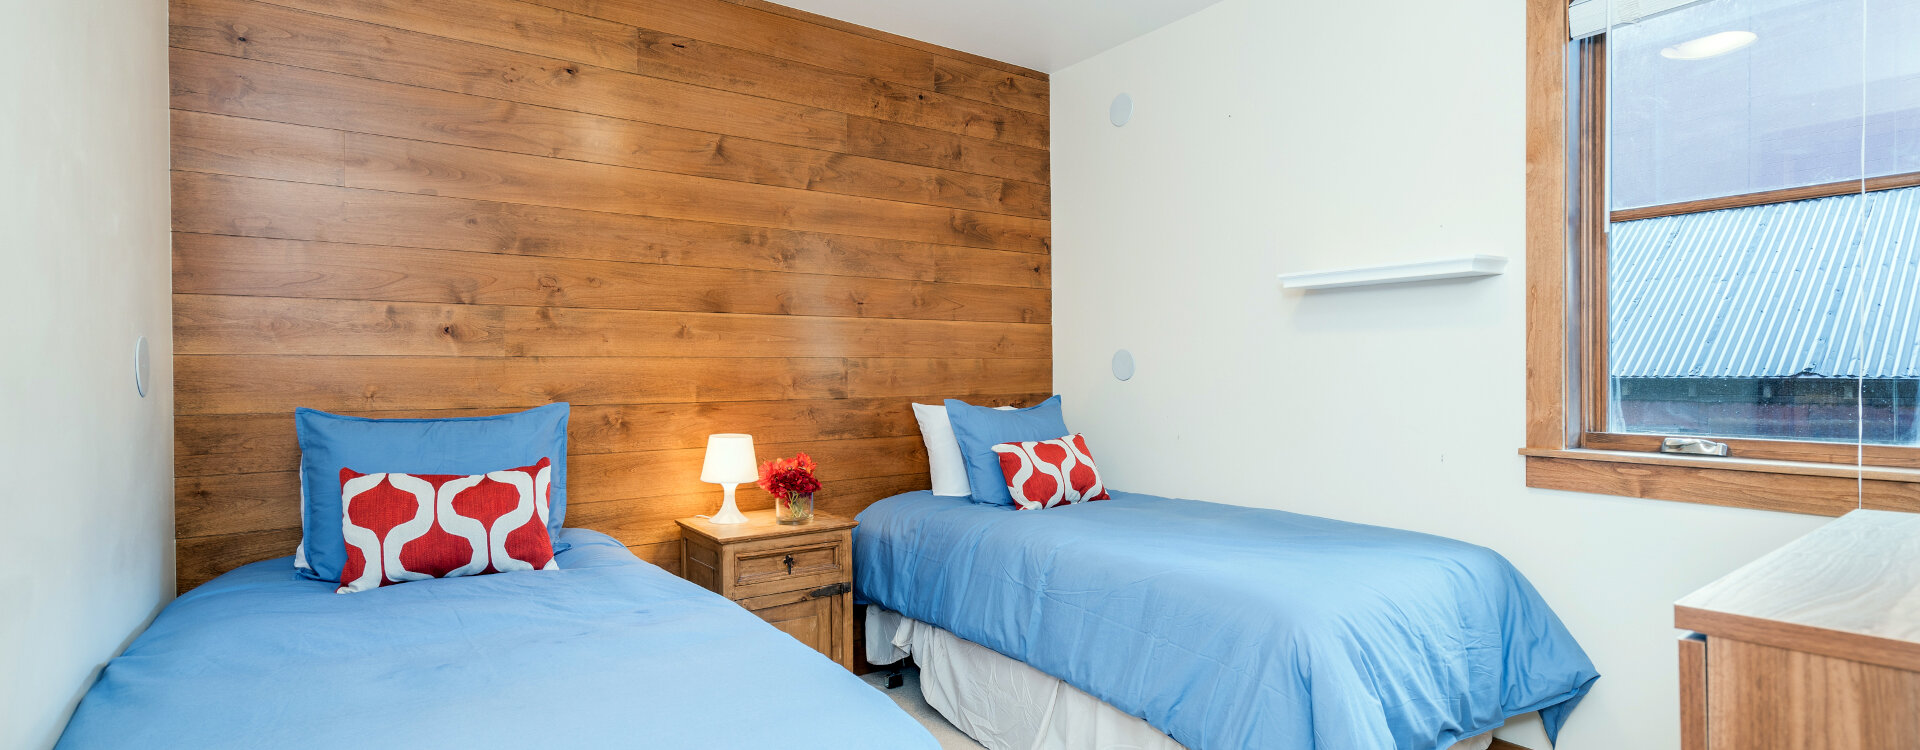 10-Telluride-Skyline-at-Meribel-Guest-Bedroom